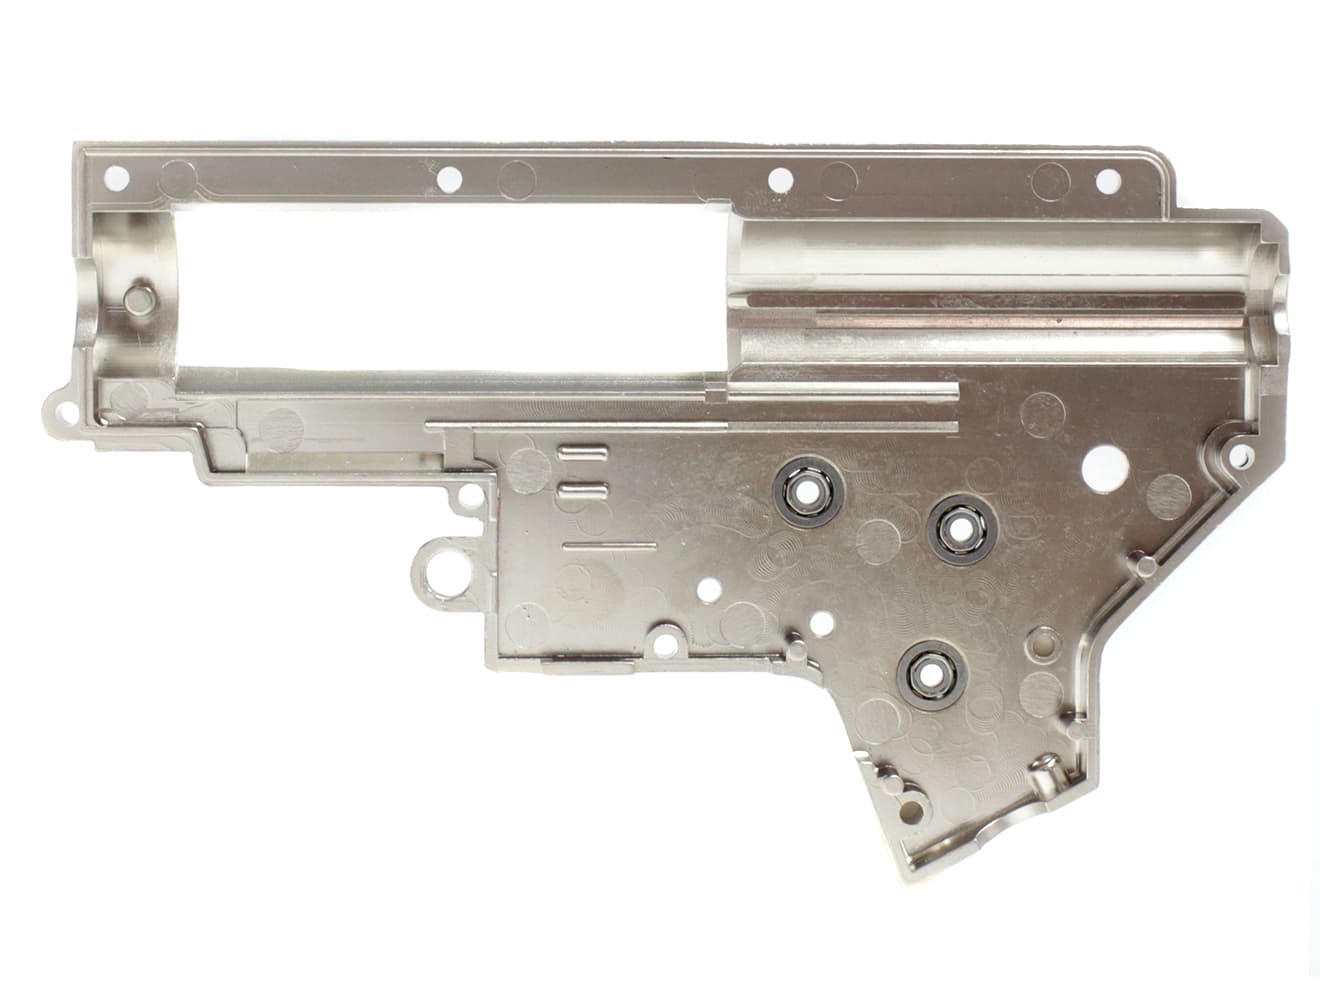 LONEX 8mm 強化メカボックスセット Ver2 M4/M16 [適合：Ver2 M4・M16